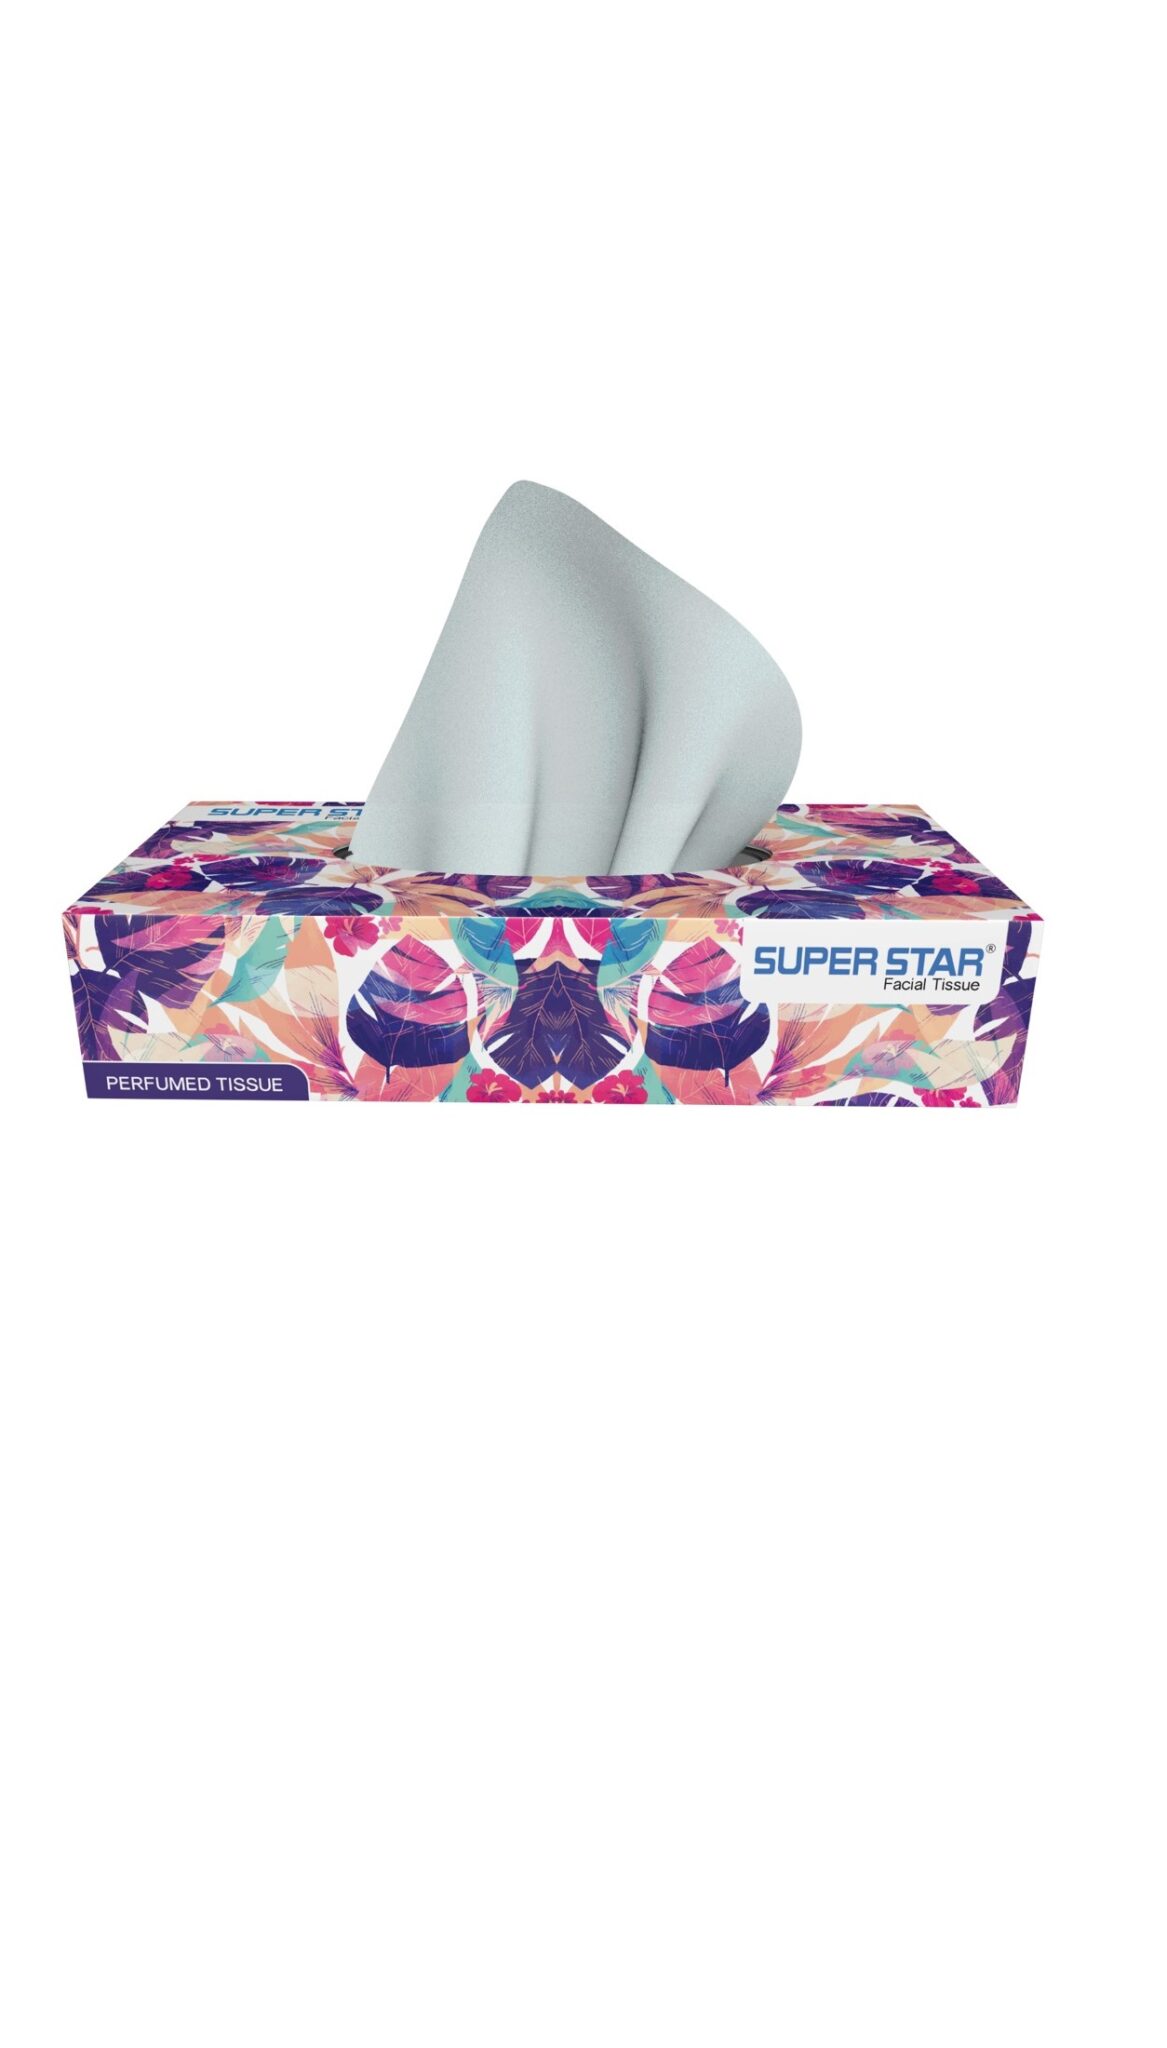 Super Star Facial Tissue- Perfumed (60*2 ply)